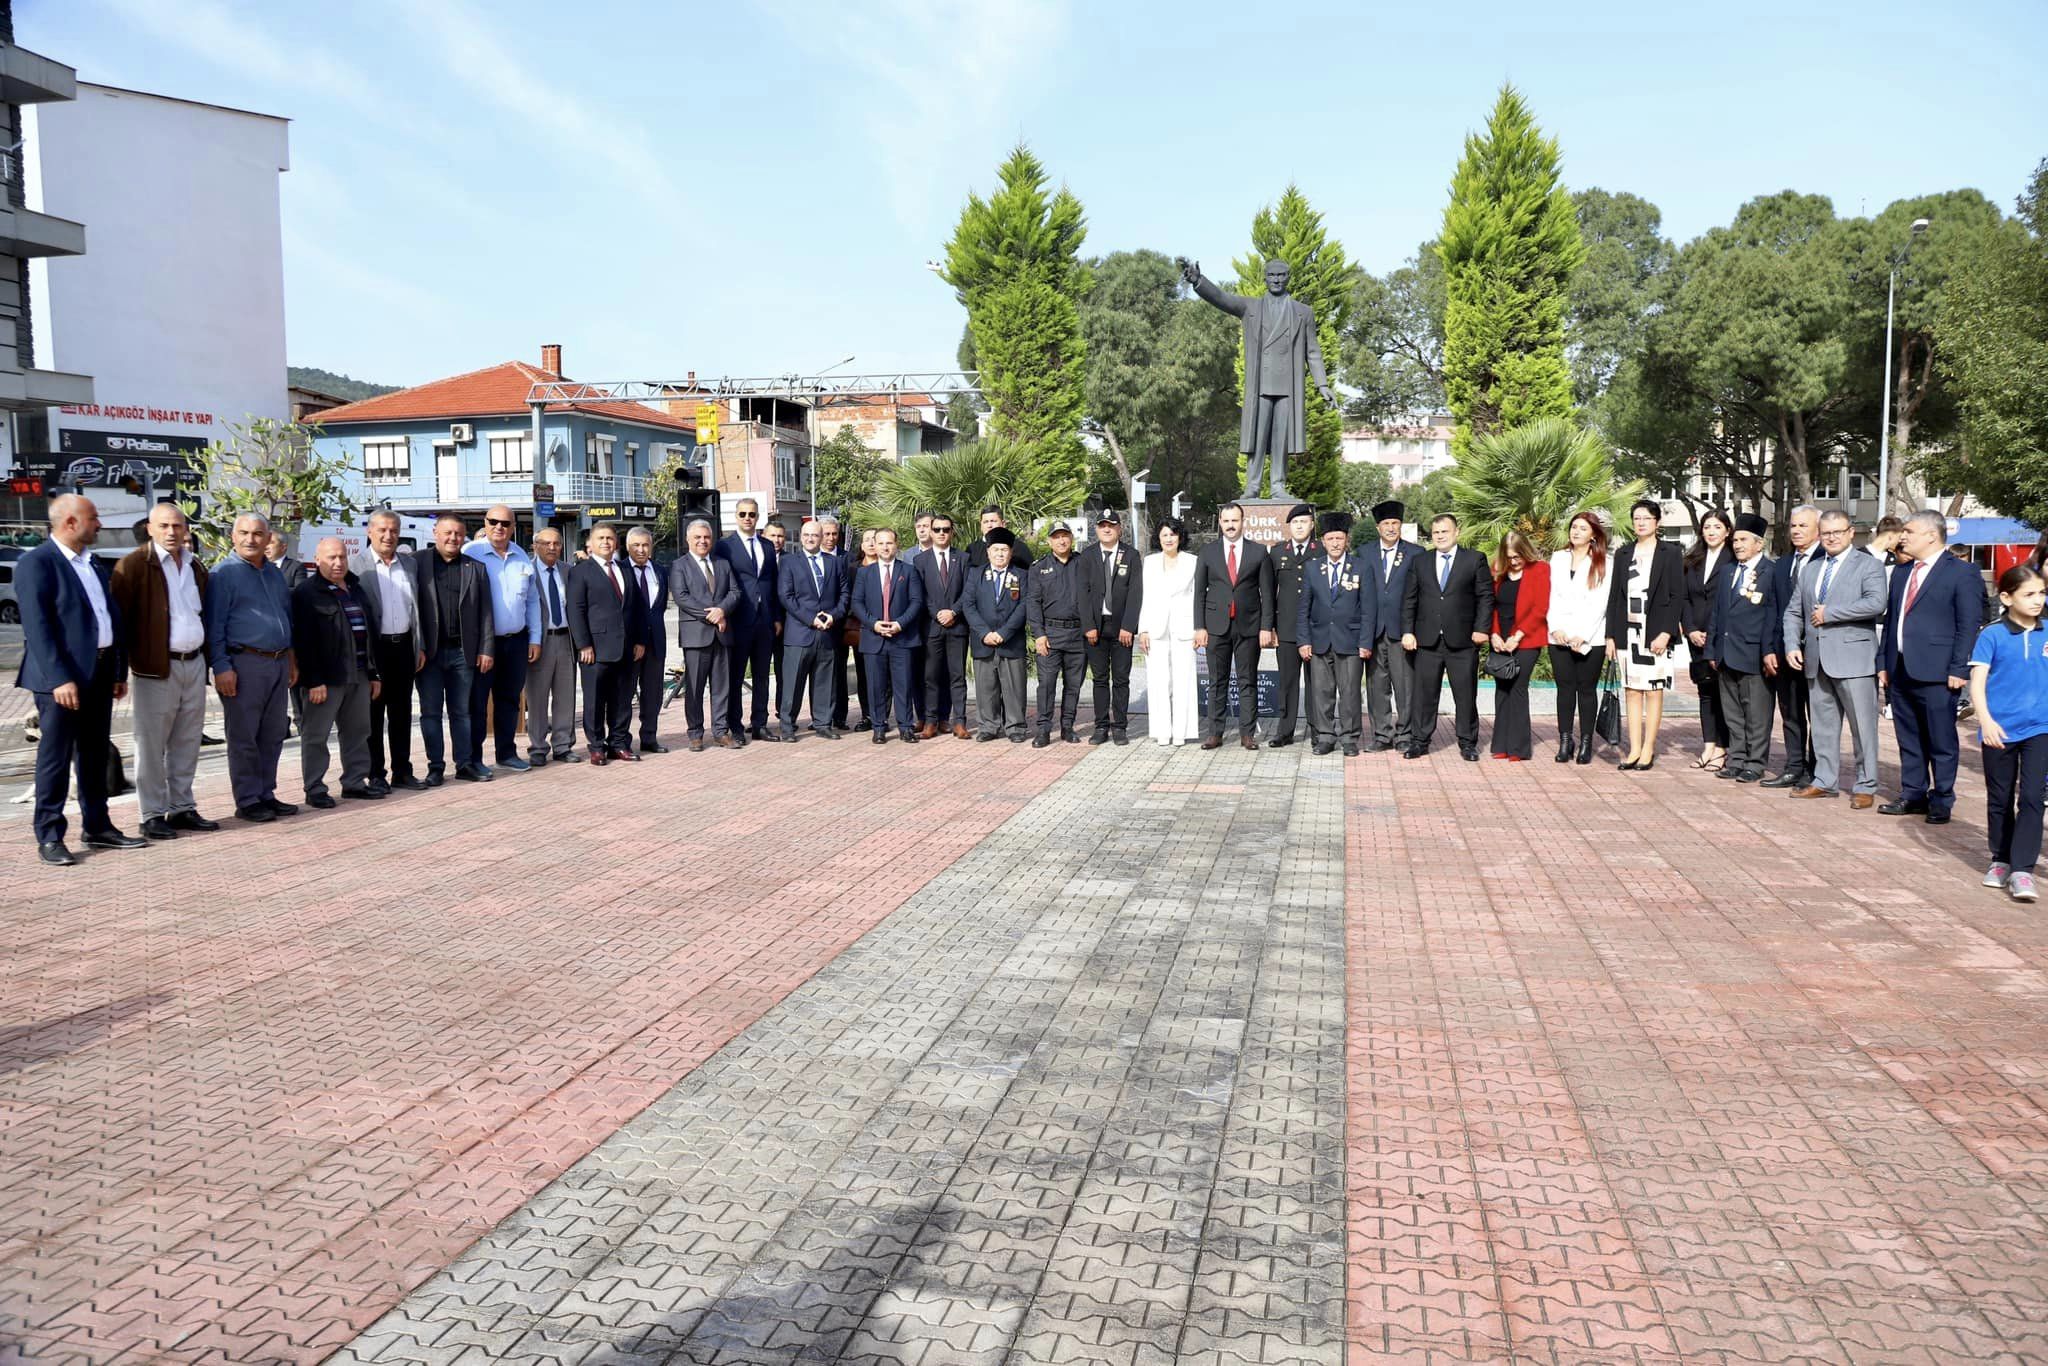 Kınık Belediyesi Türkiye Büyük Millet Meclisi'nin açılışının 104’üncü yıl dönümü ve 23 Nisan Ulusal Egemenlik ve Çocuk Bayramı, tüm yurtta olduğu gibi Kınık’ta da büyük bir coşku ile kutlandı.